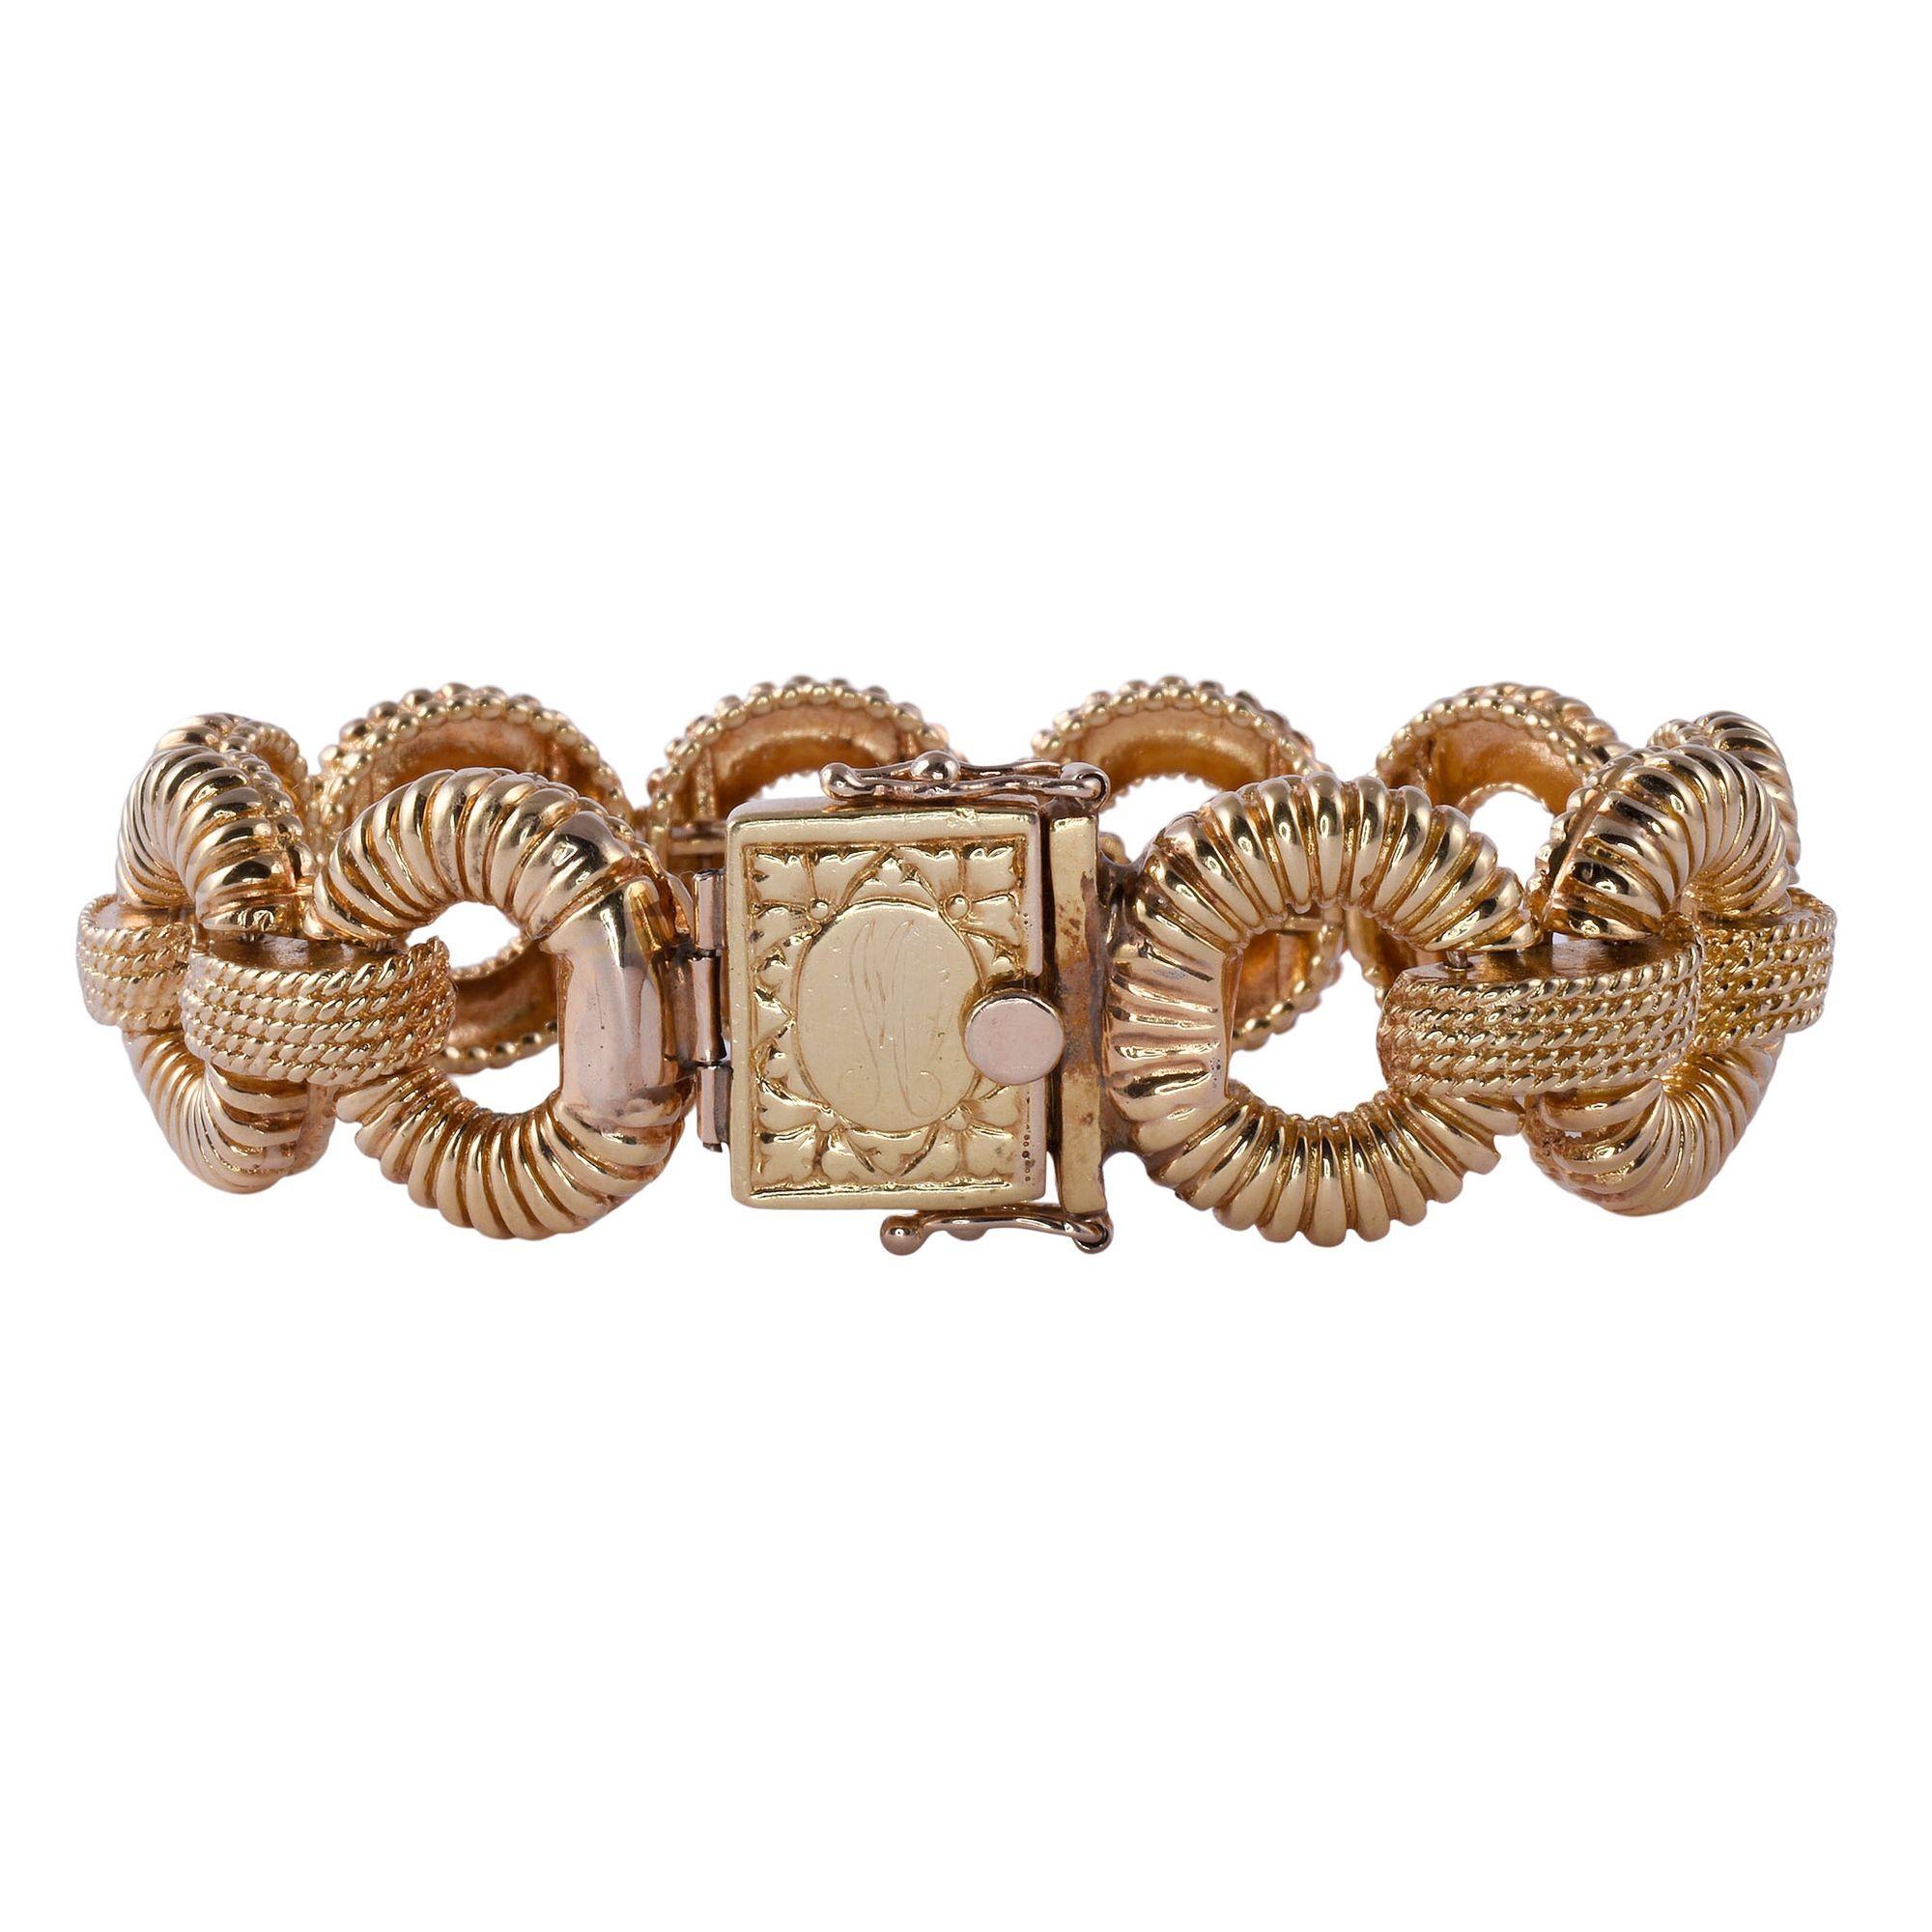 Vintage Armband aus 18 Karat Gold, ca. 1960-70. Dieses Armband im Vintage-Stil besteht aus kreisförmigen Gliedern mit Wellenschliff, die aus 18 Karat Gelbgold gefertigt sind. Das 18K-Gliederarmband wiegt 77,1 Gramm. [KIMH 577]

Abmessungen
7.625